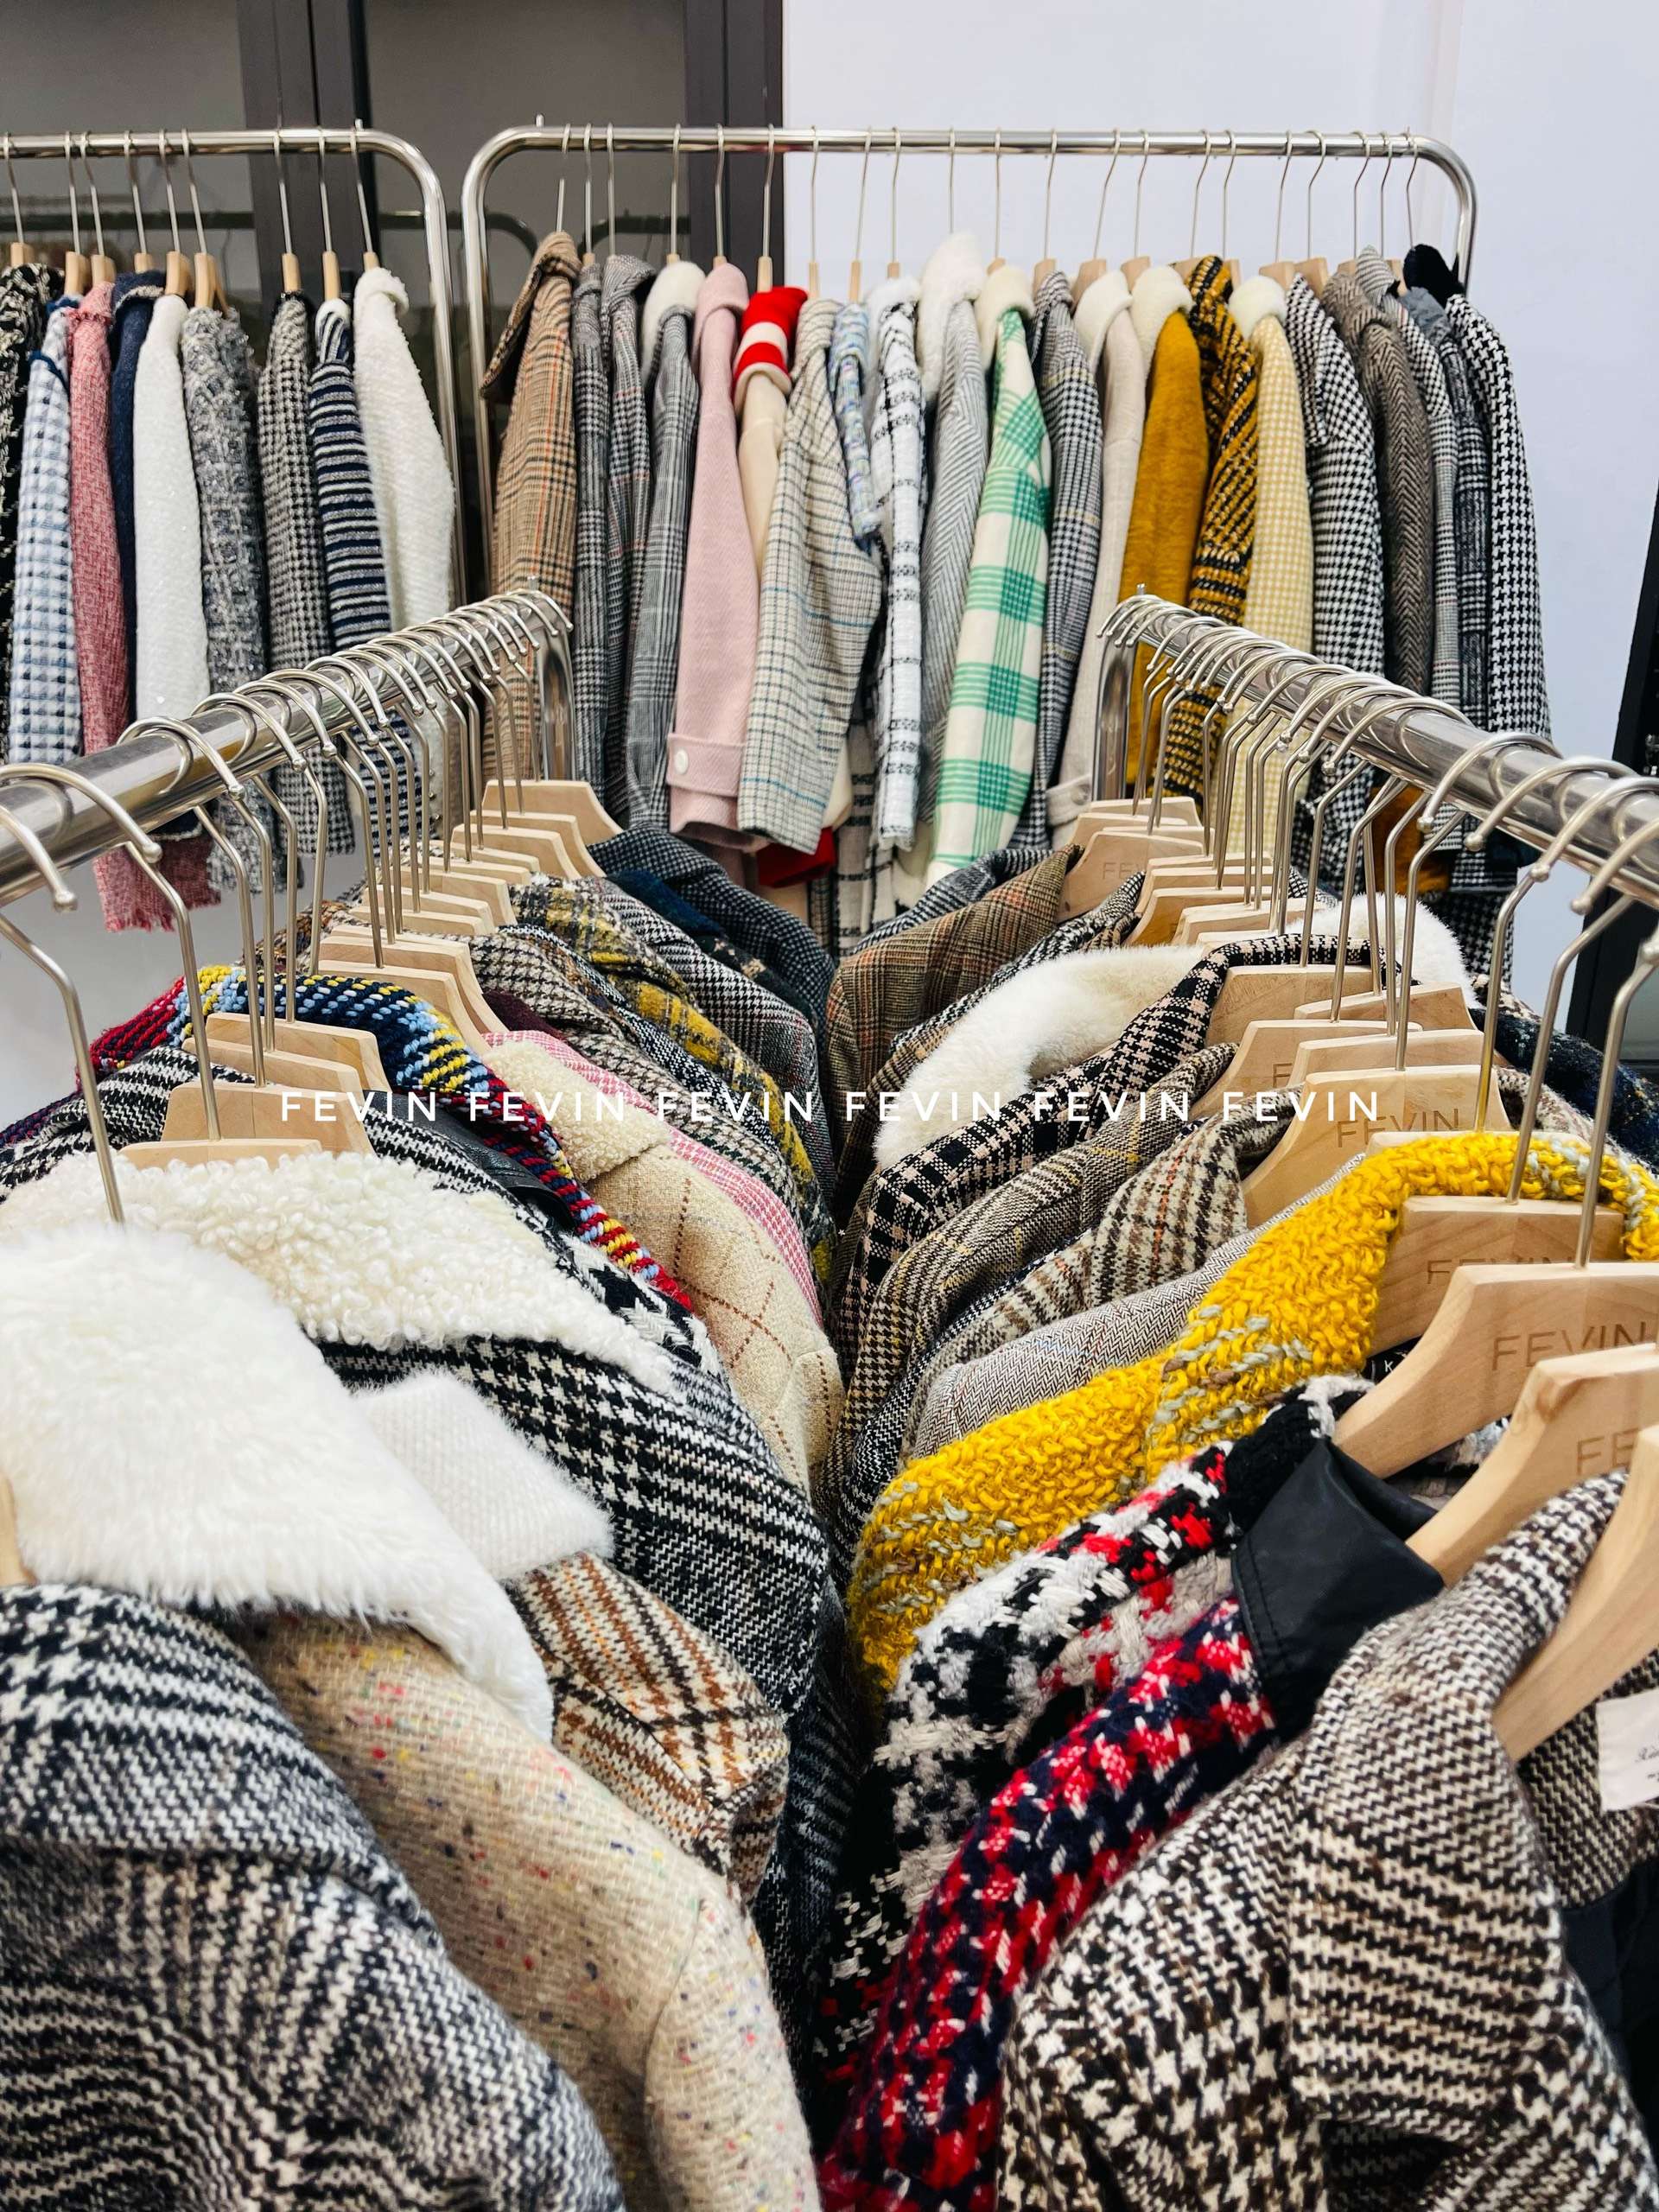 Áo Khoác Dạ Ngắn, Vải Dạ Tweed Hàn Quốc - Tổng kho hàng thùng Miền Bắc